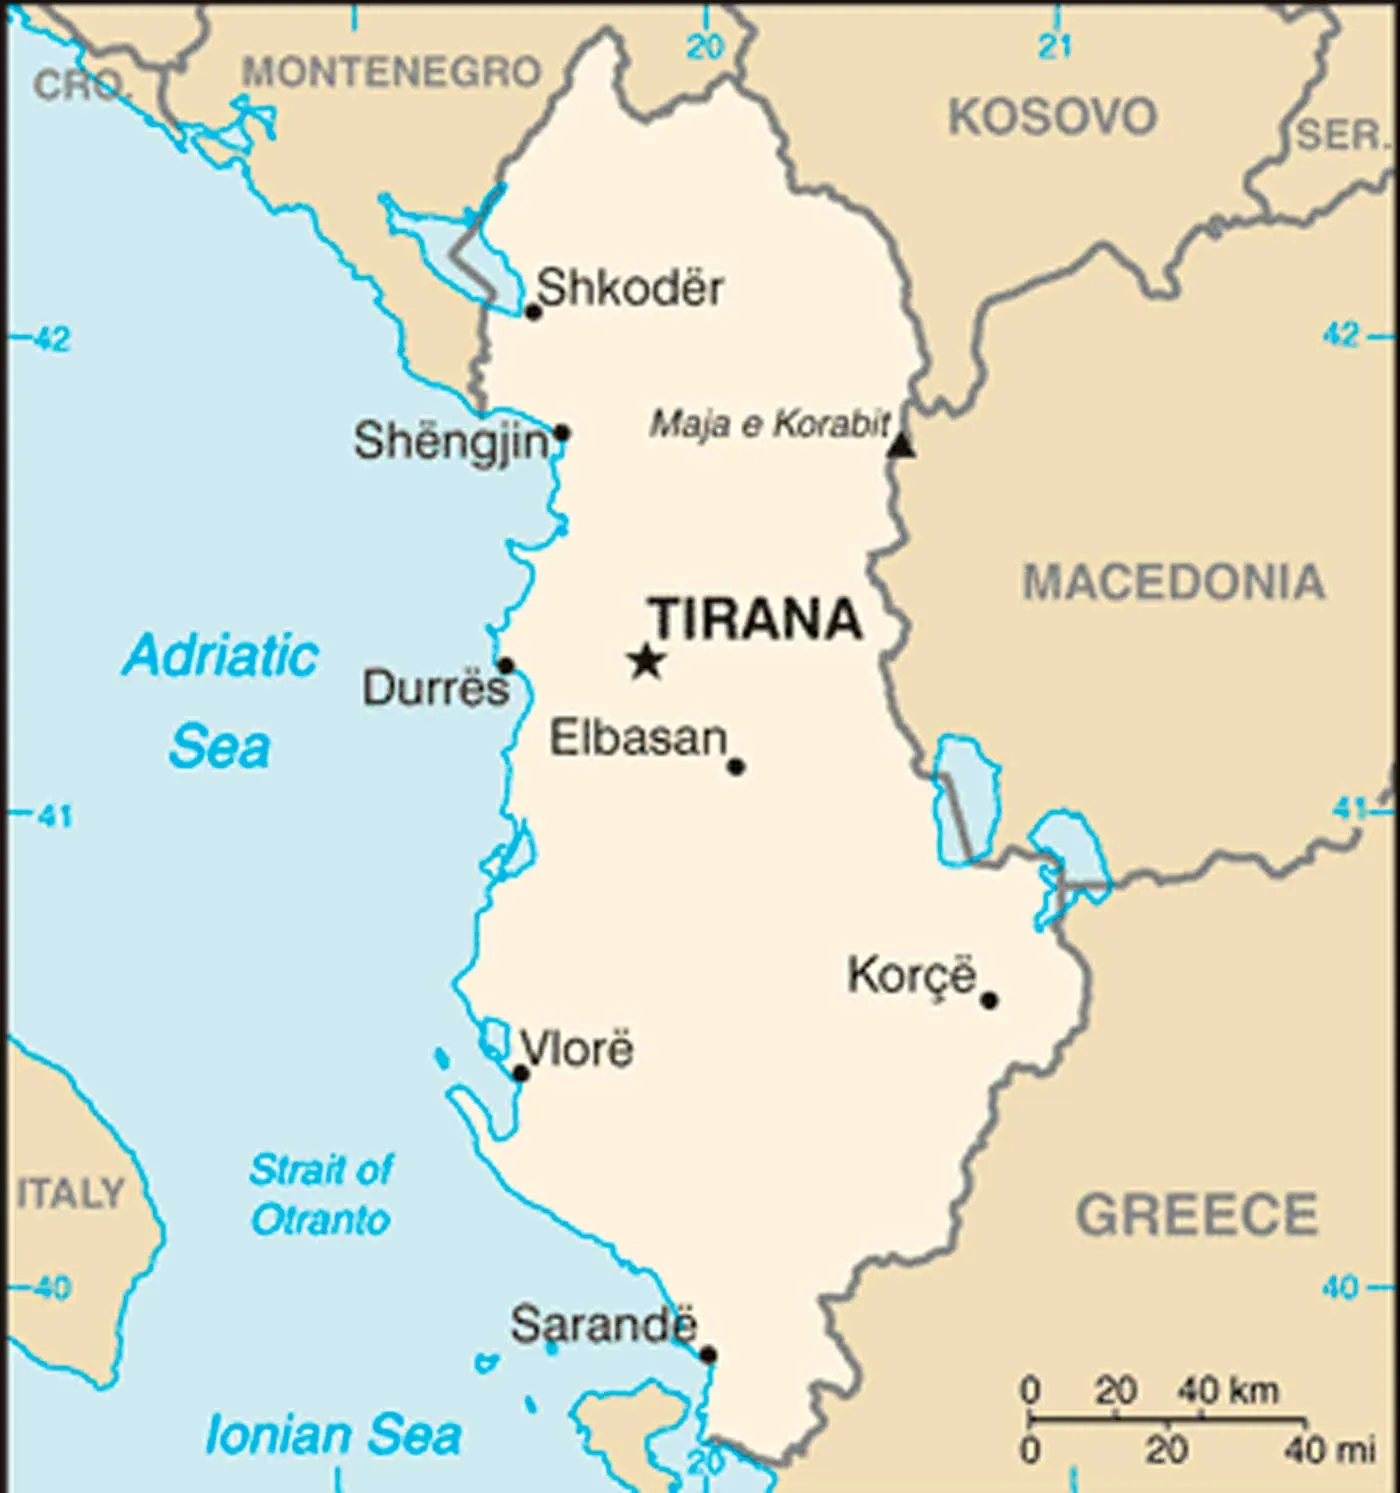 Mapa da Albânia